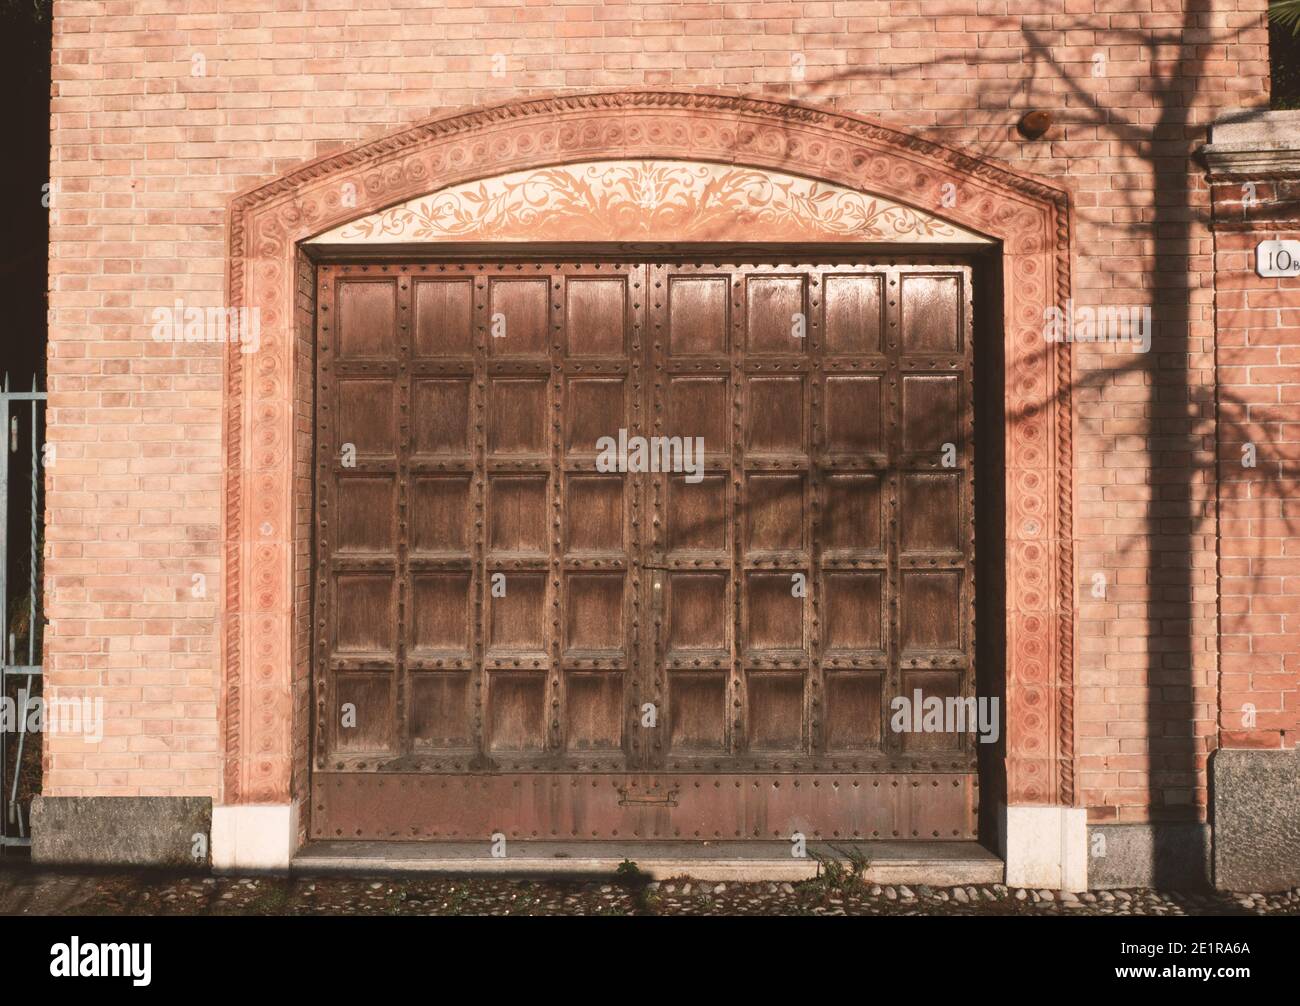 Garage dans une ancienne maison en brique avec grande porte d'accès en bois cloutée et cadre décoré.objet architectural externe de la structure de bâtiment. Banque D'Images